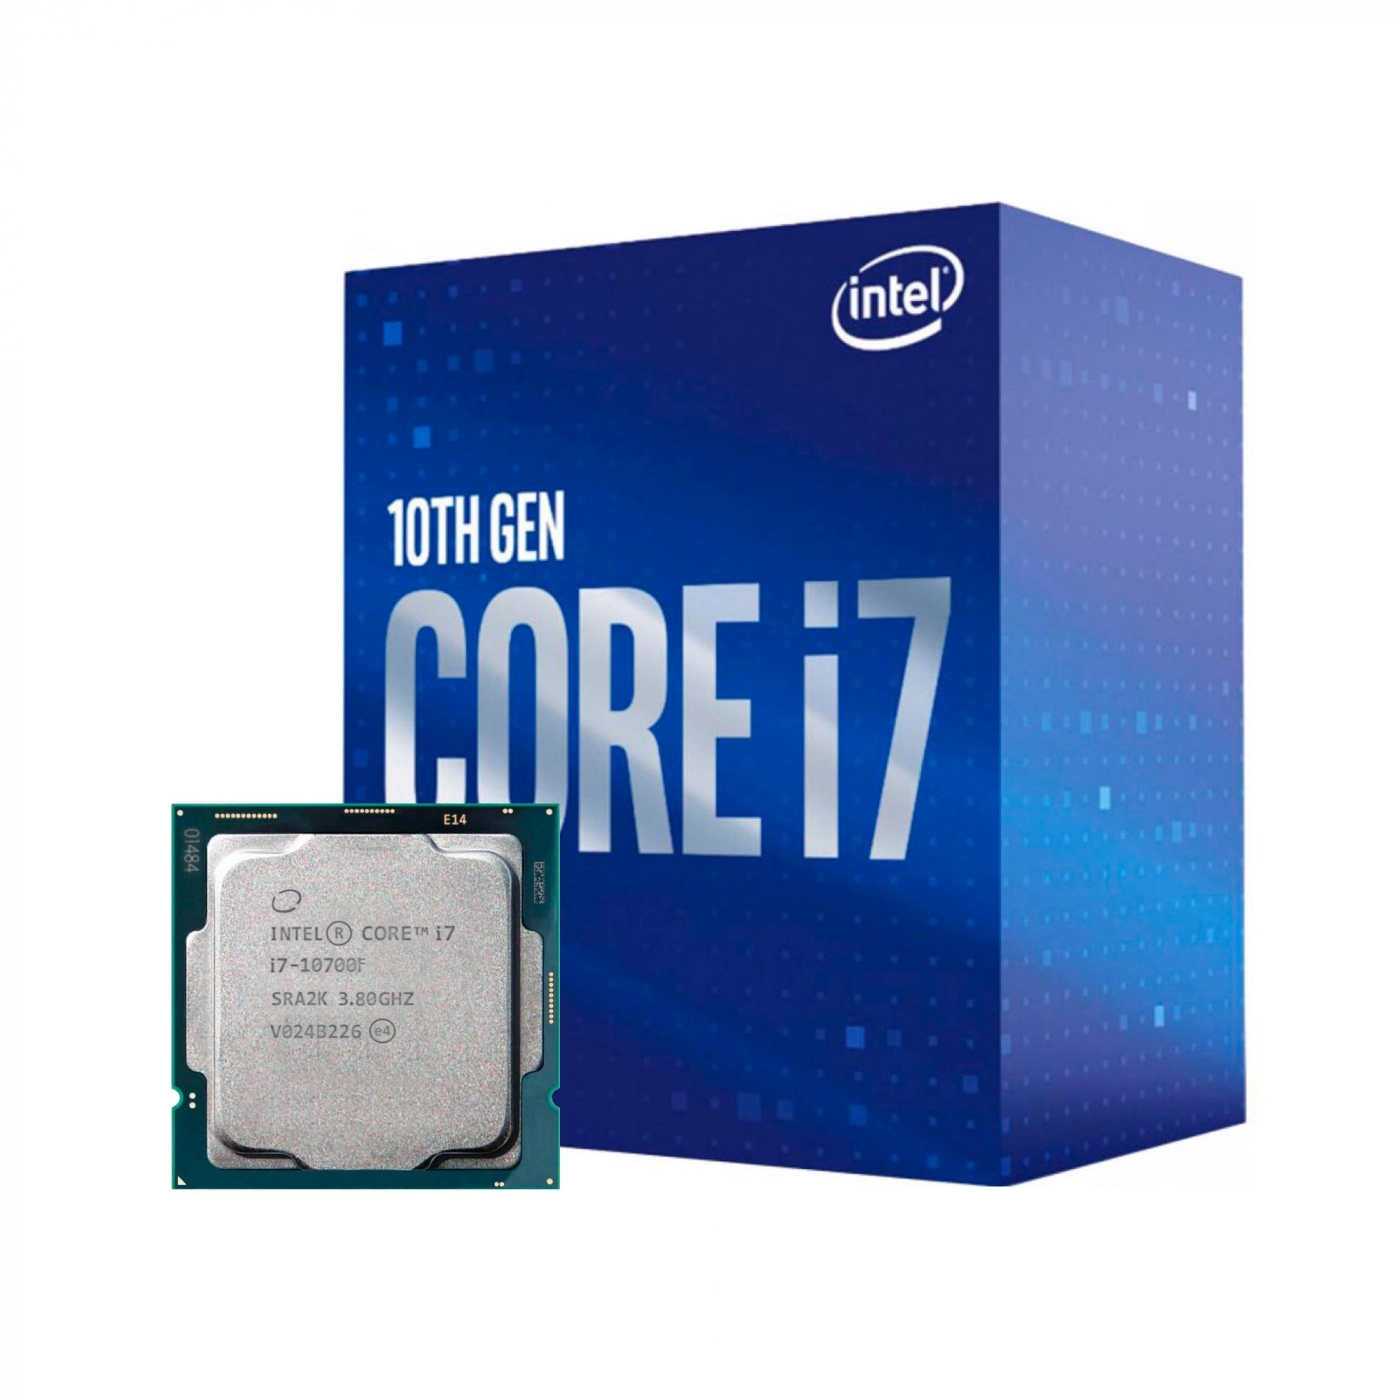 Купить Процессор INTEL Core i7-10700F (2.9GHz, 16MB, LGA1200) BOX - фото 1